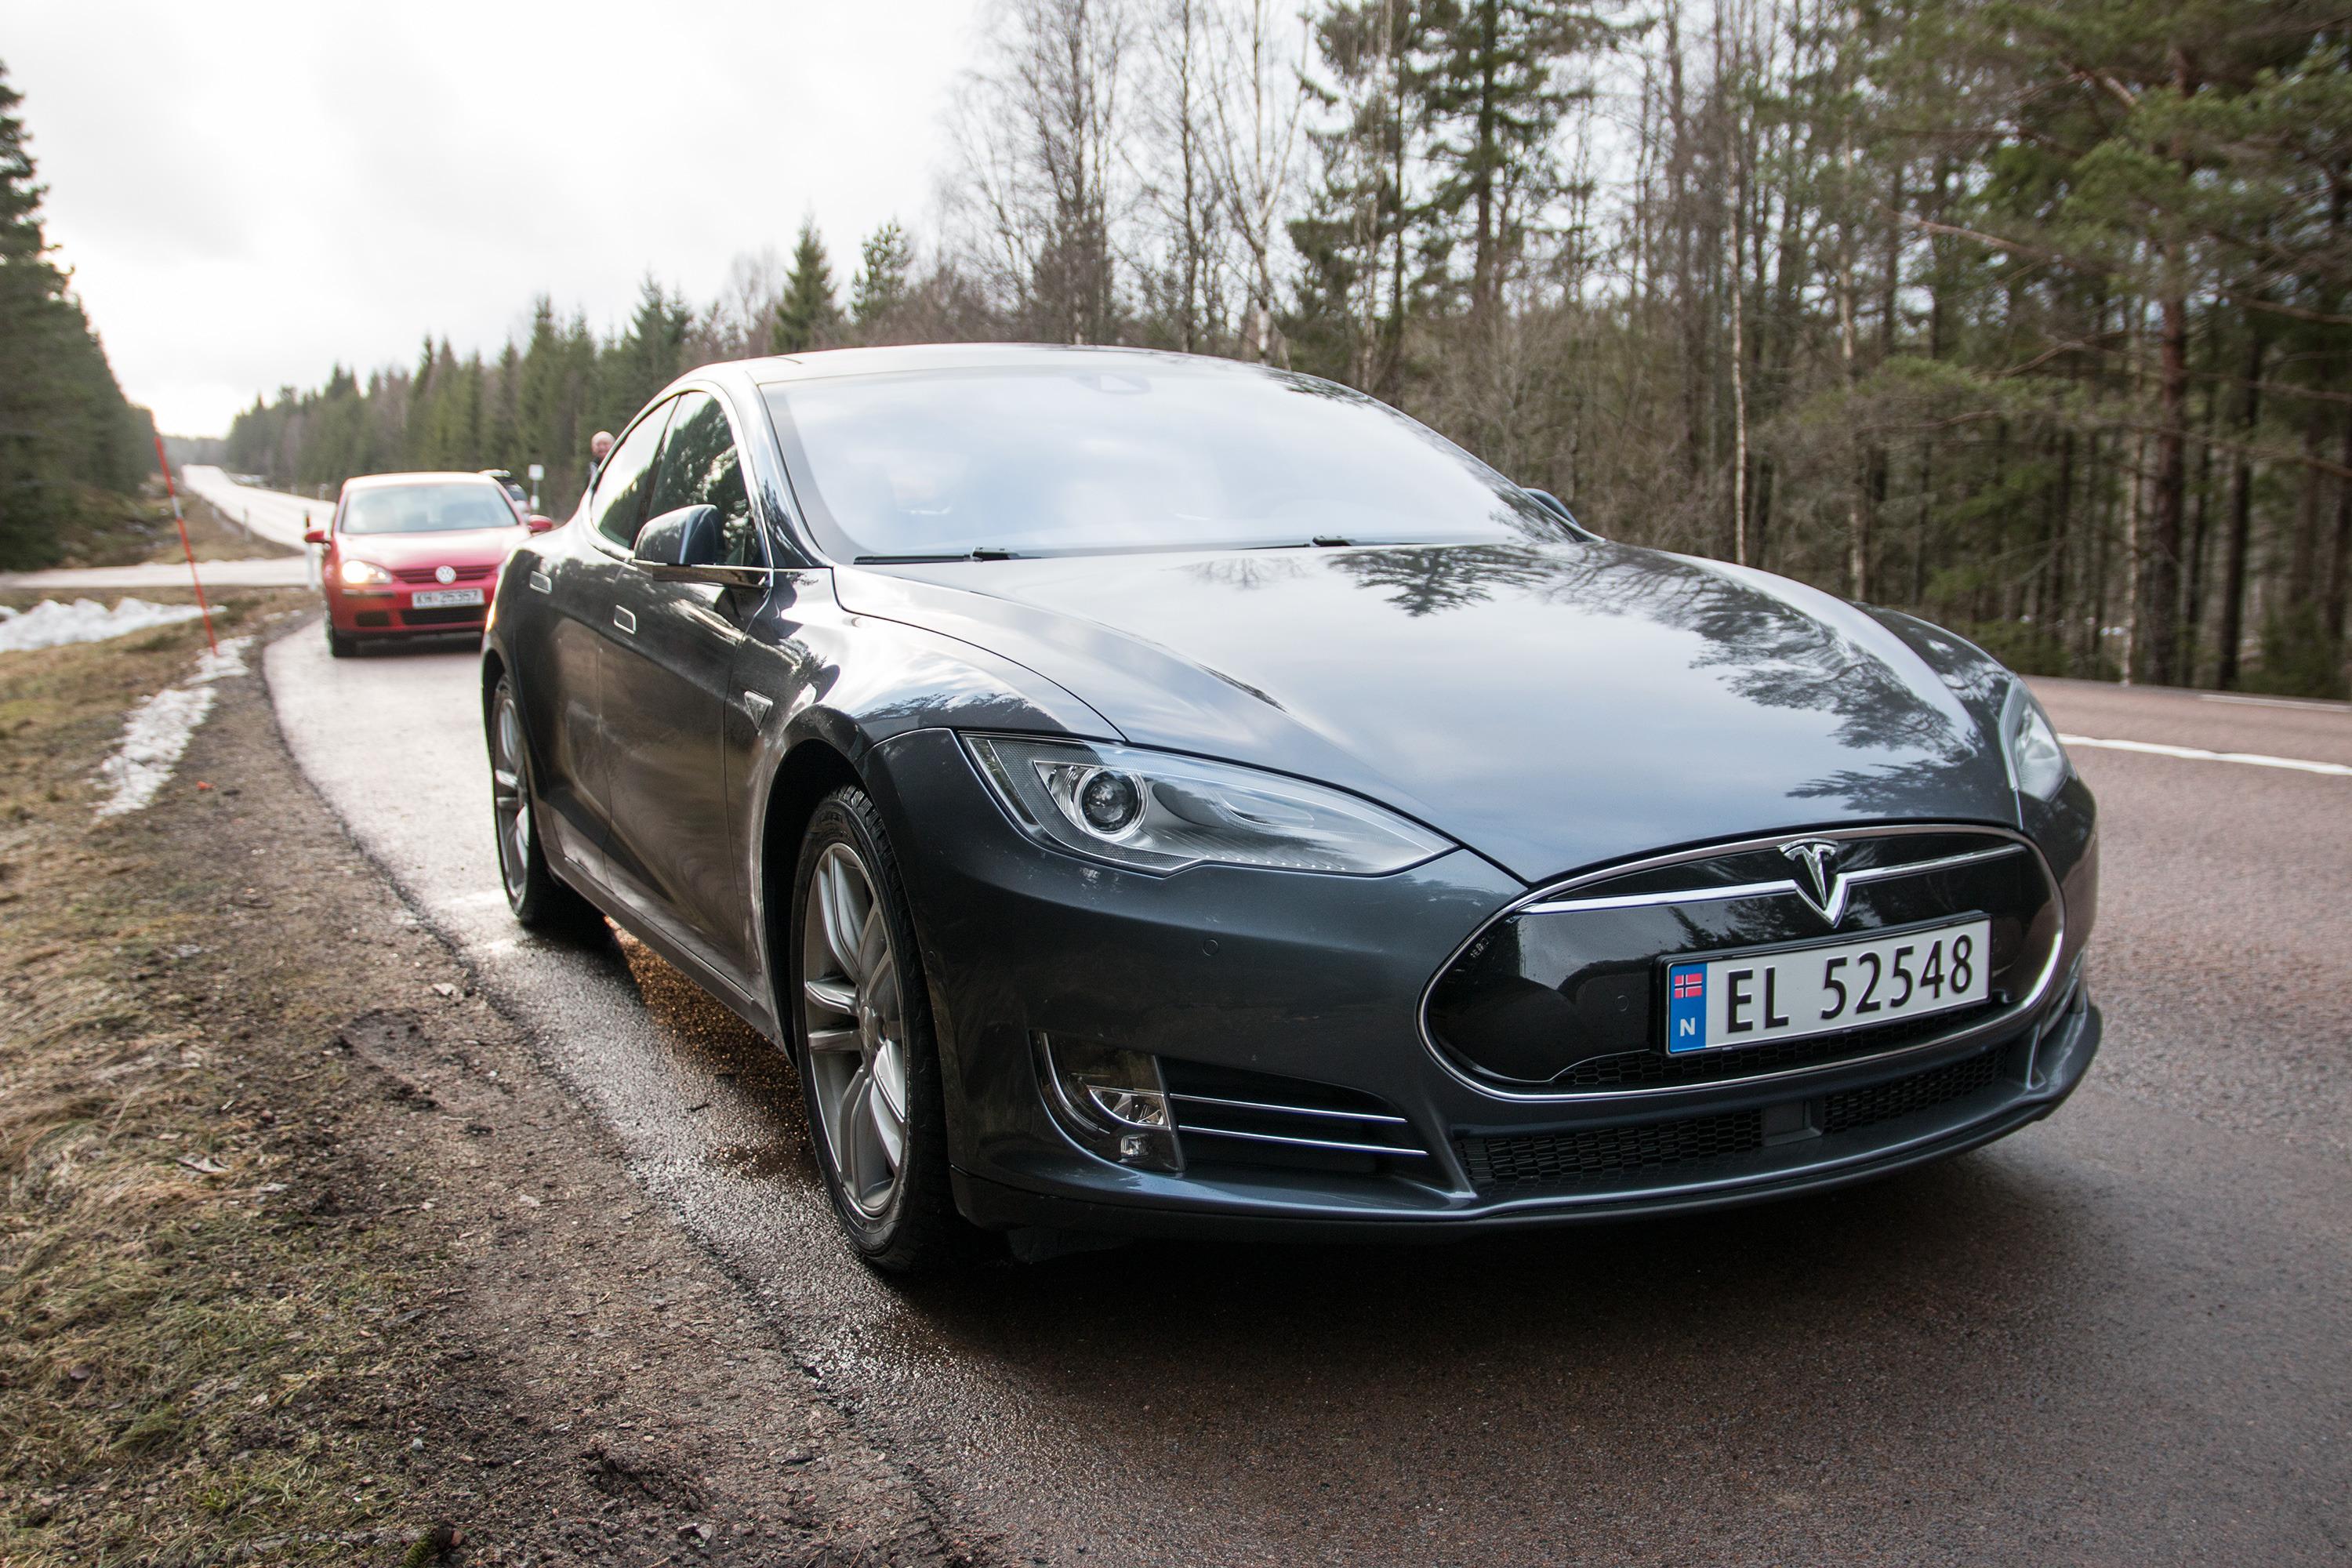 Vi tilbakela flere hundre kilometer i den nye Teslaen, både på svenske og norske landeveier.